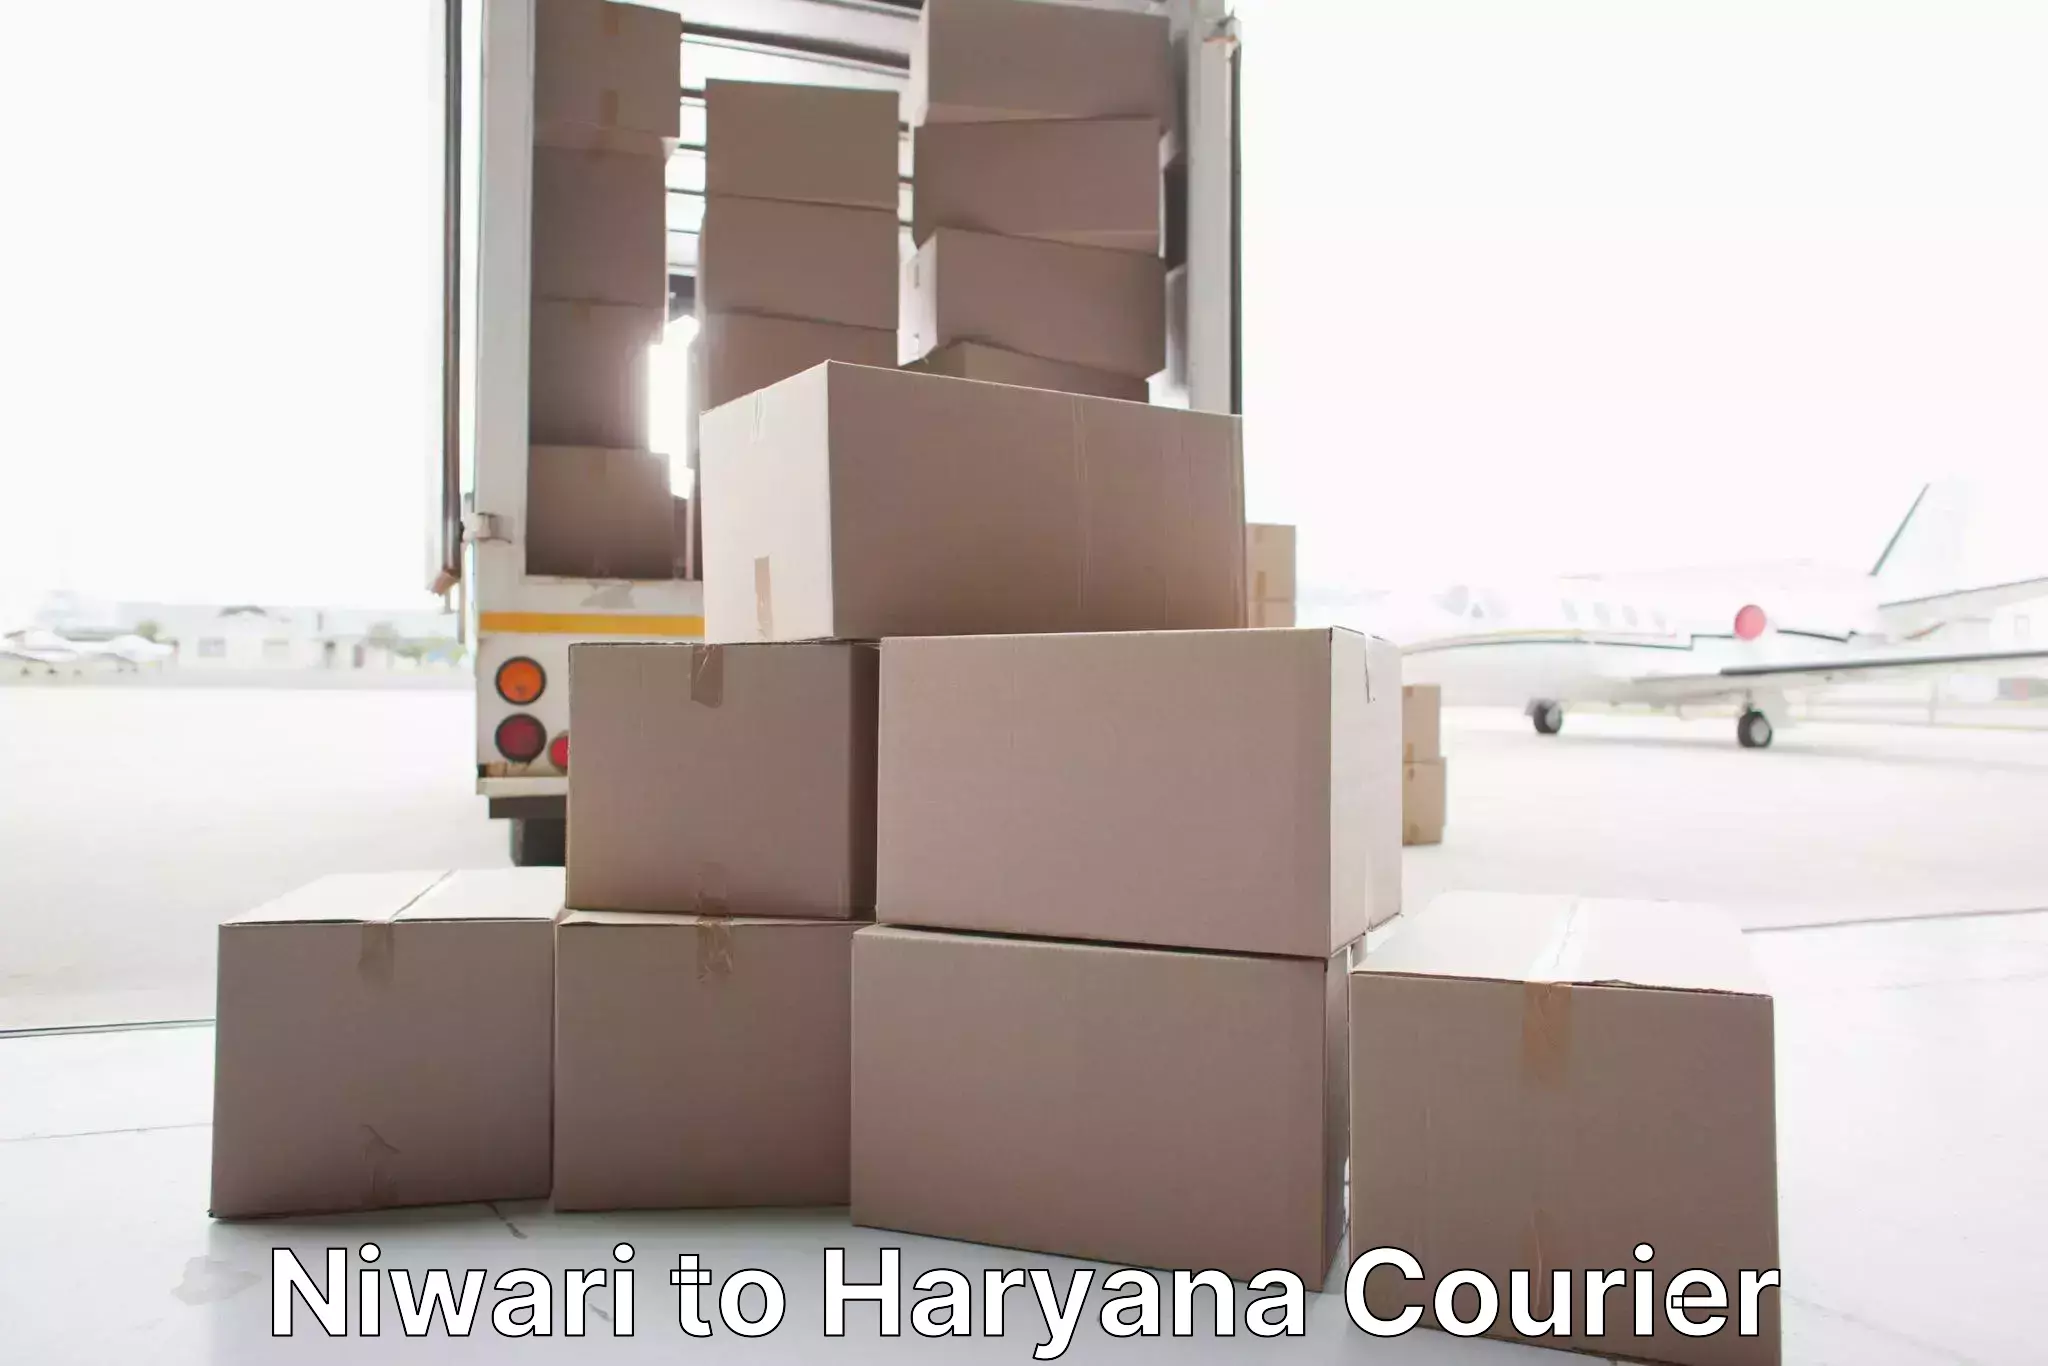 Furniture moving assistance Niwari to Hansi